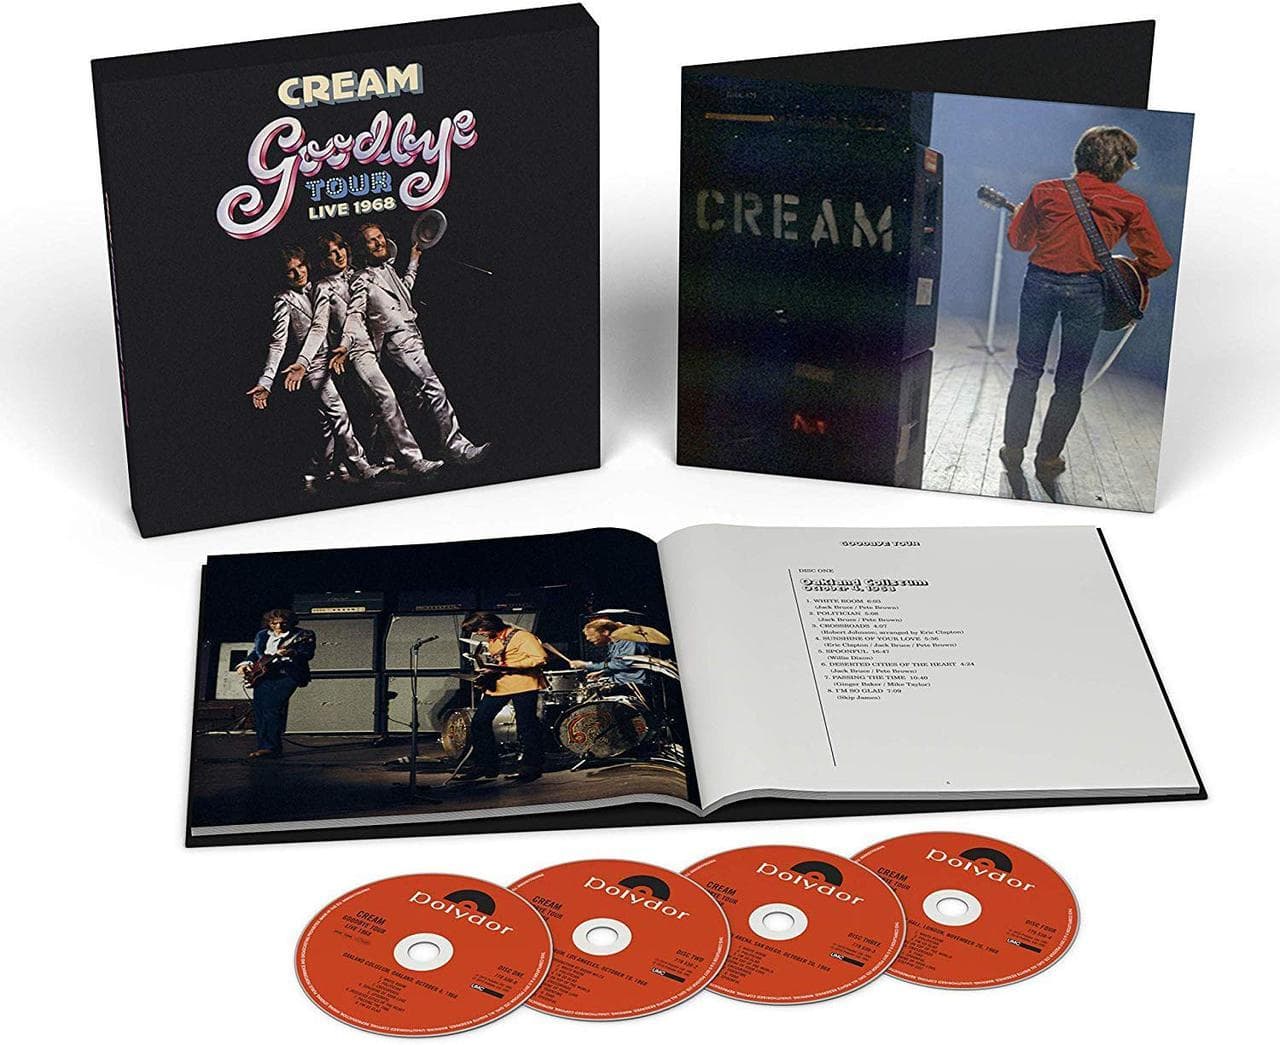 Cream Goodbye Tour 1968